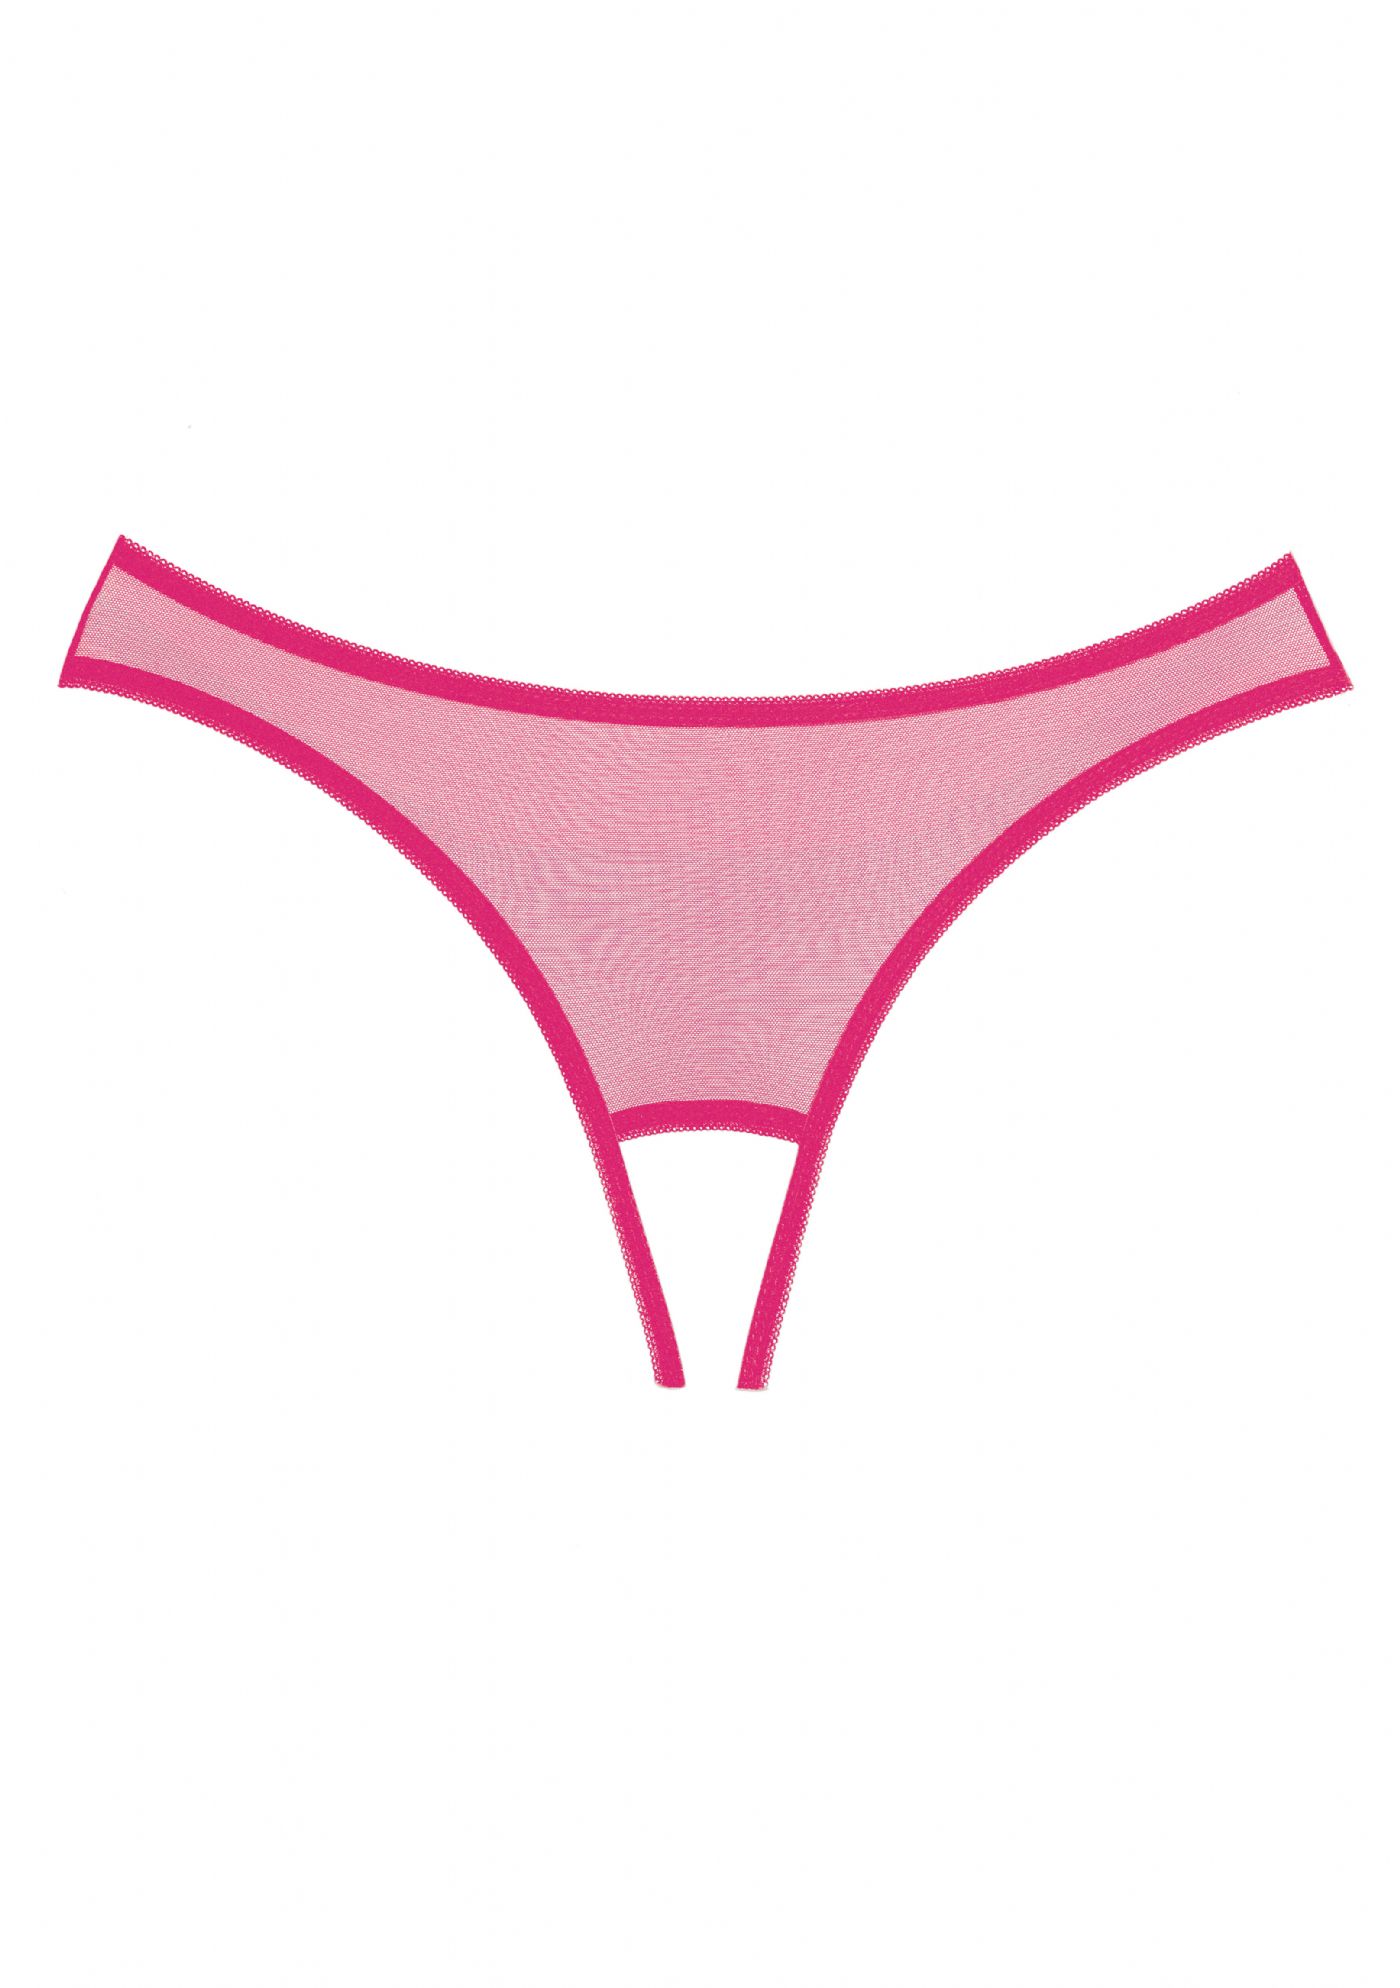 Expos Bundls Trusse - hot pink (A1071)